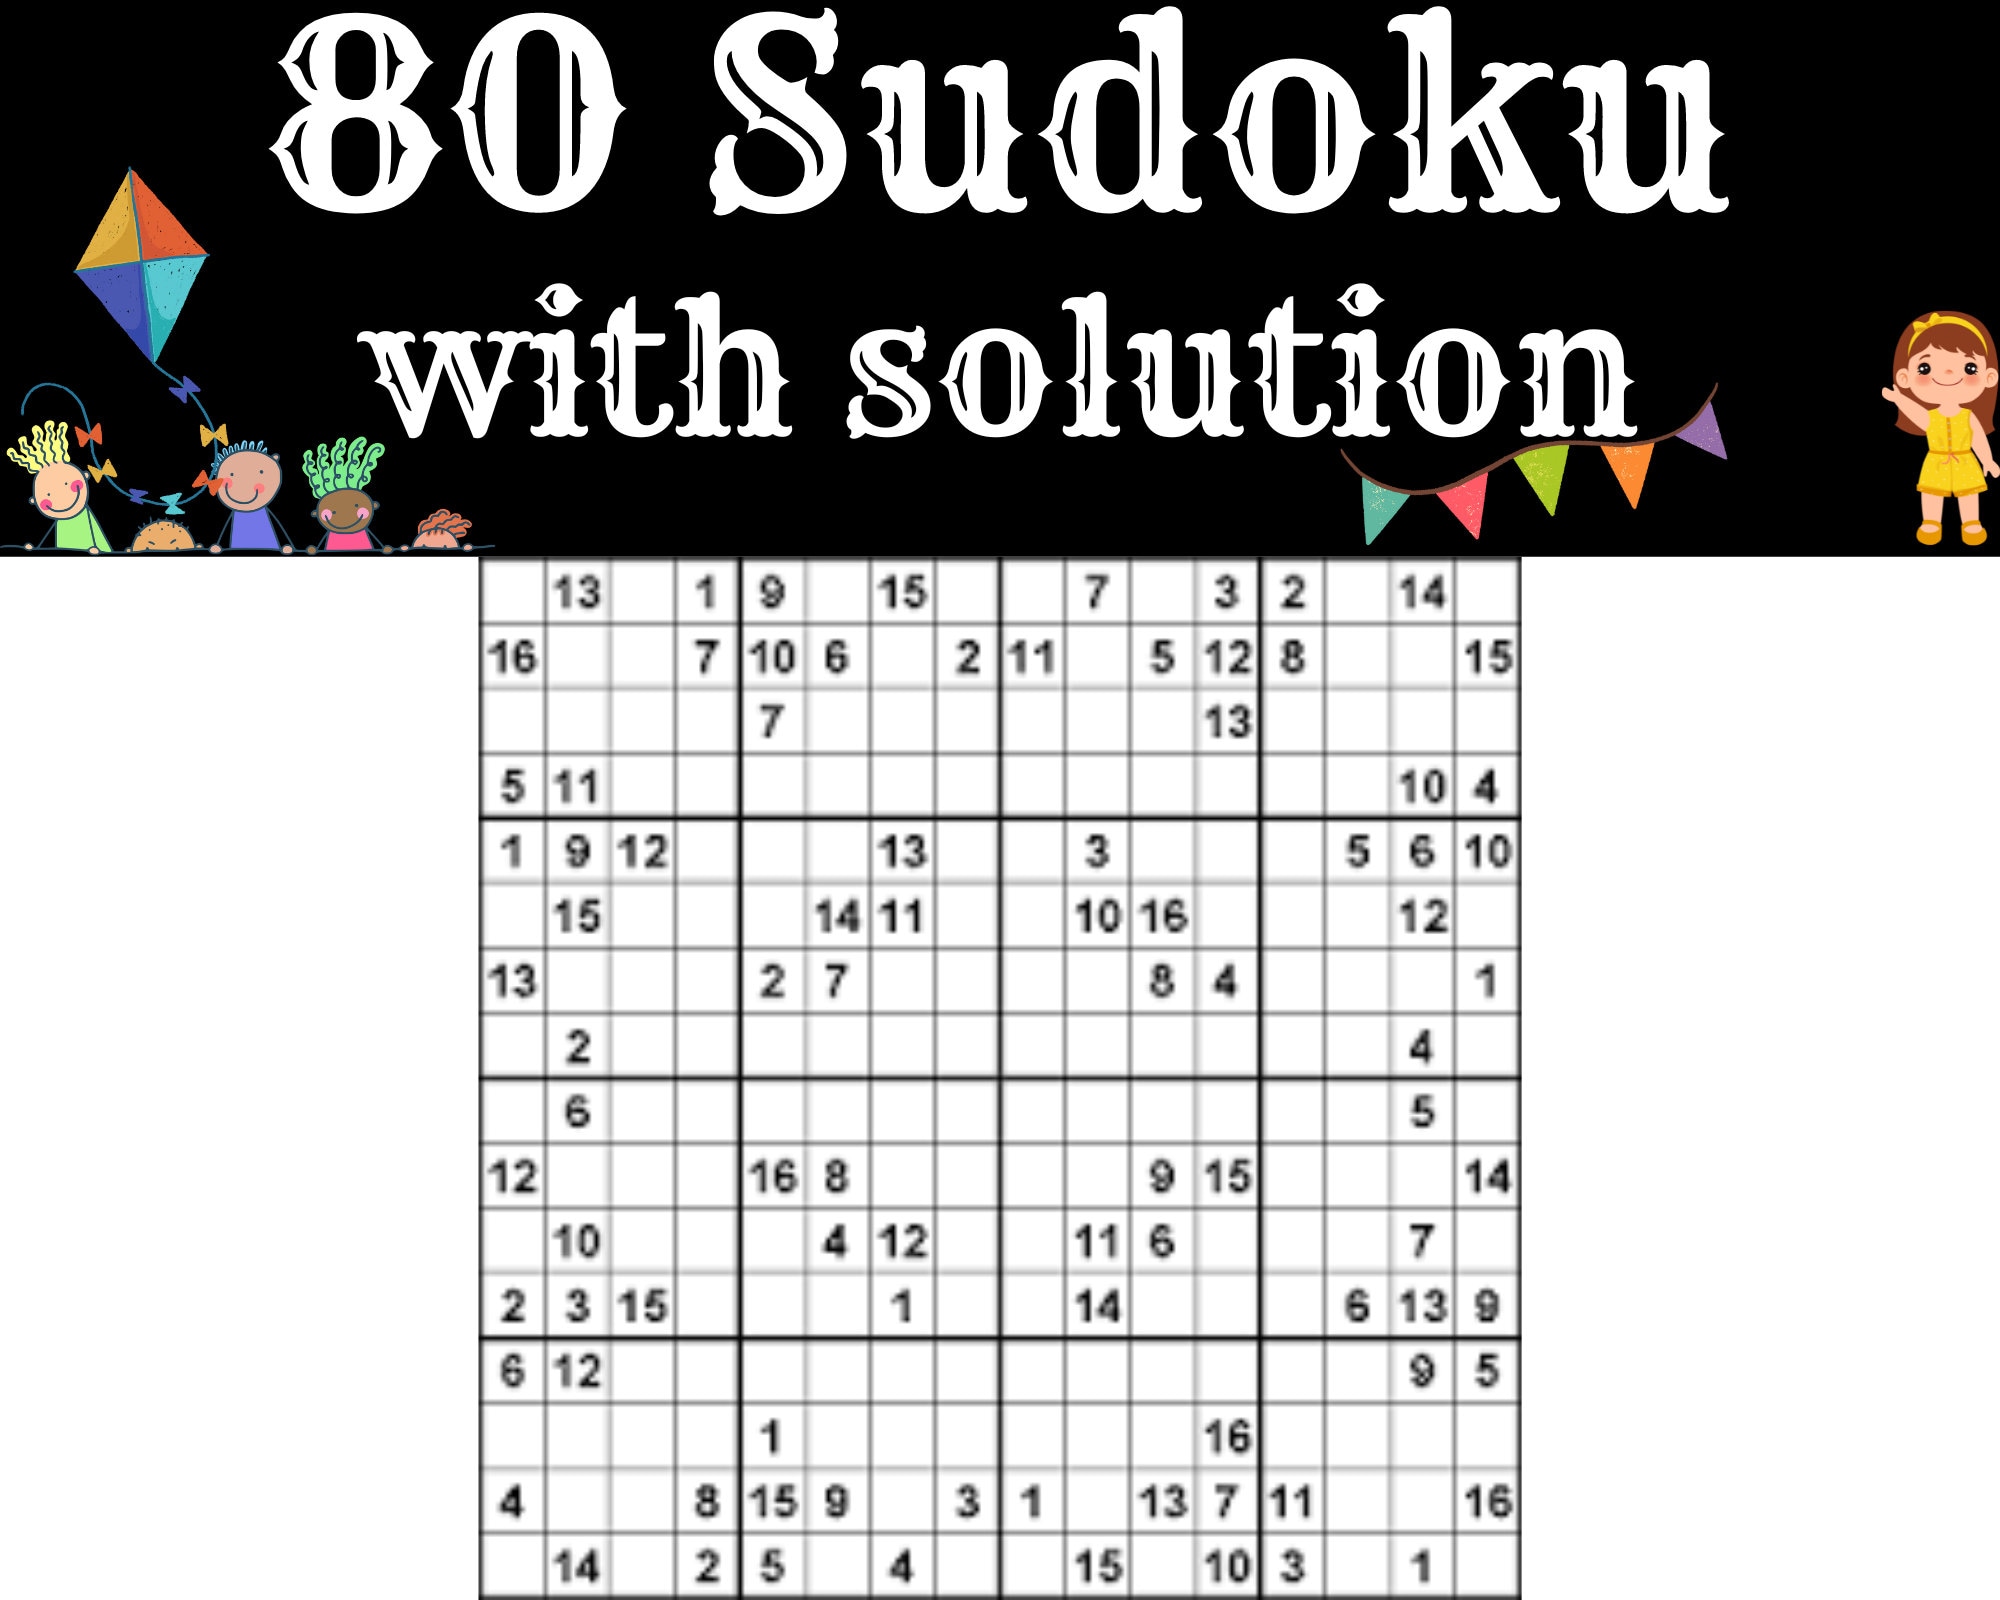 Play Sudoku Online for Free, 4x4 9x9 & 16x16 Sudoku